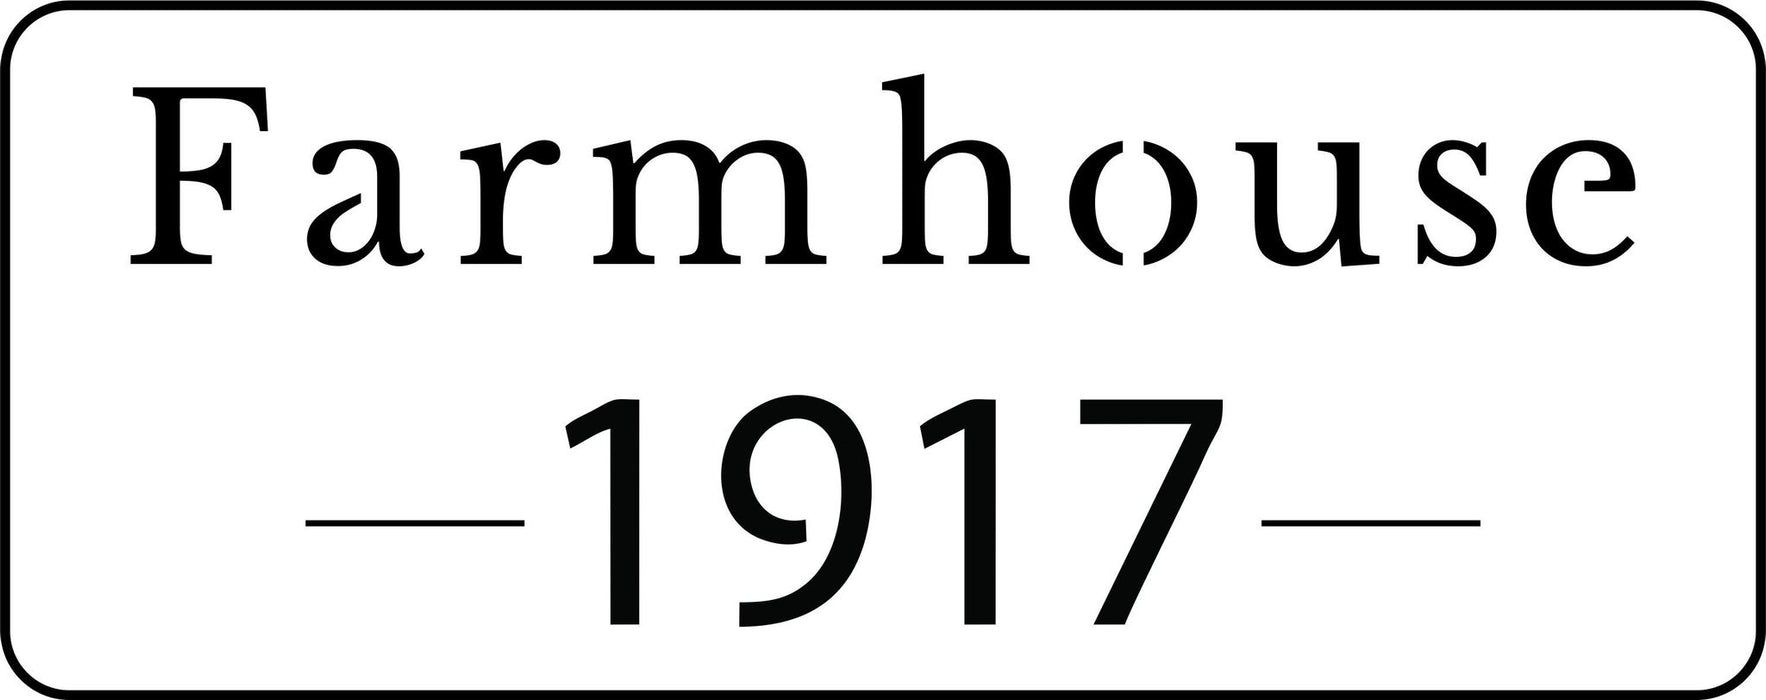 Farmhouse 1917 Stencil